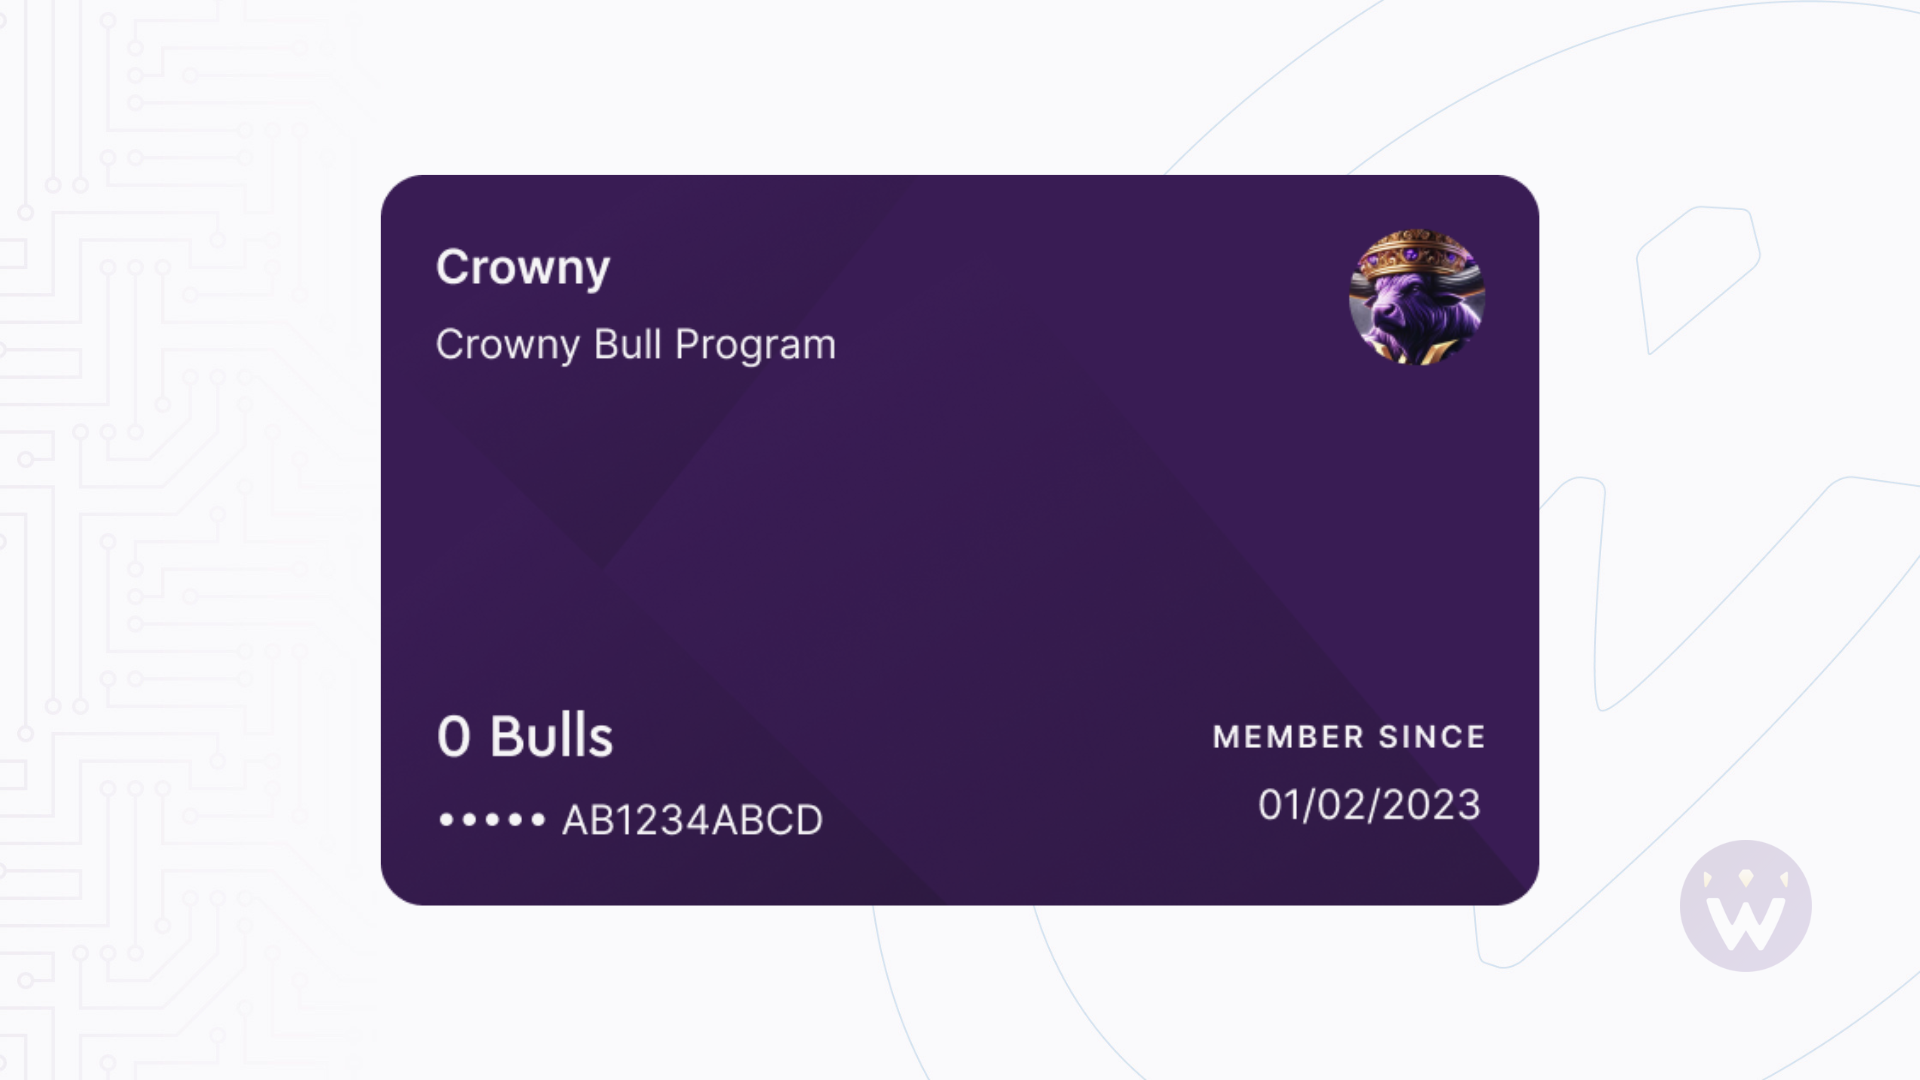 crowny bull program